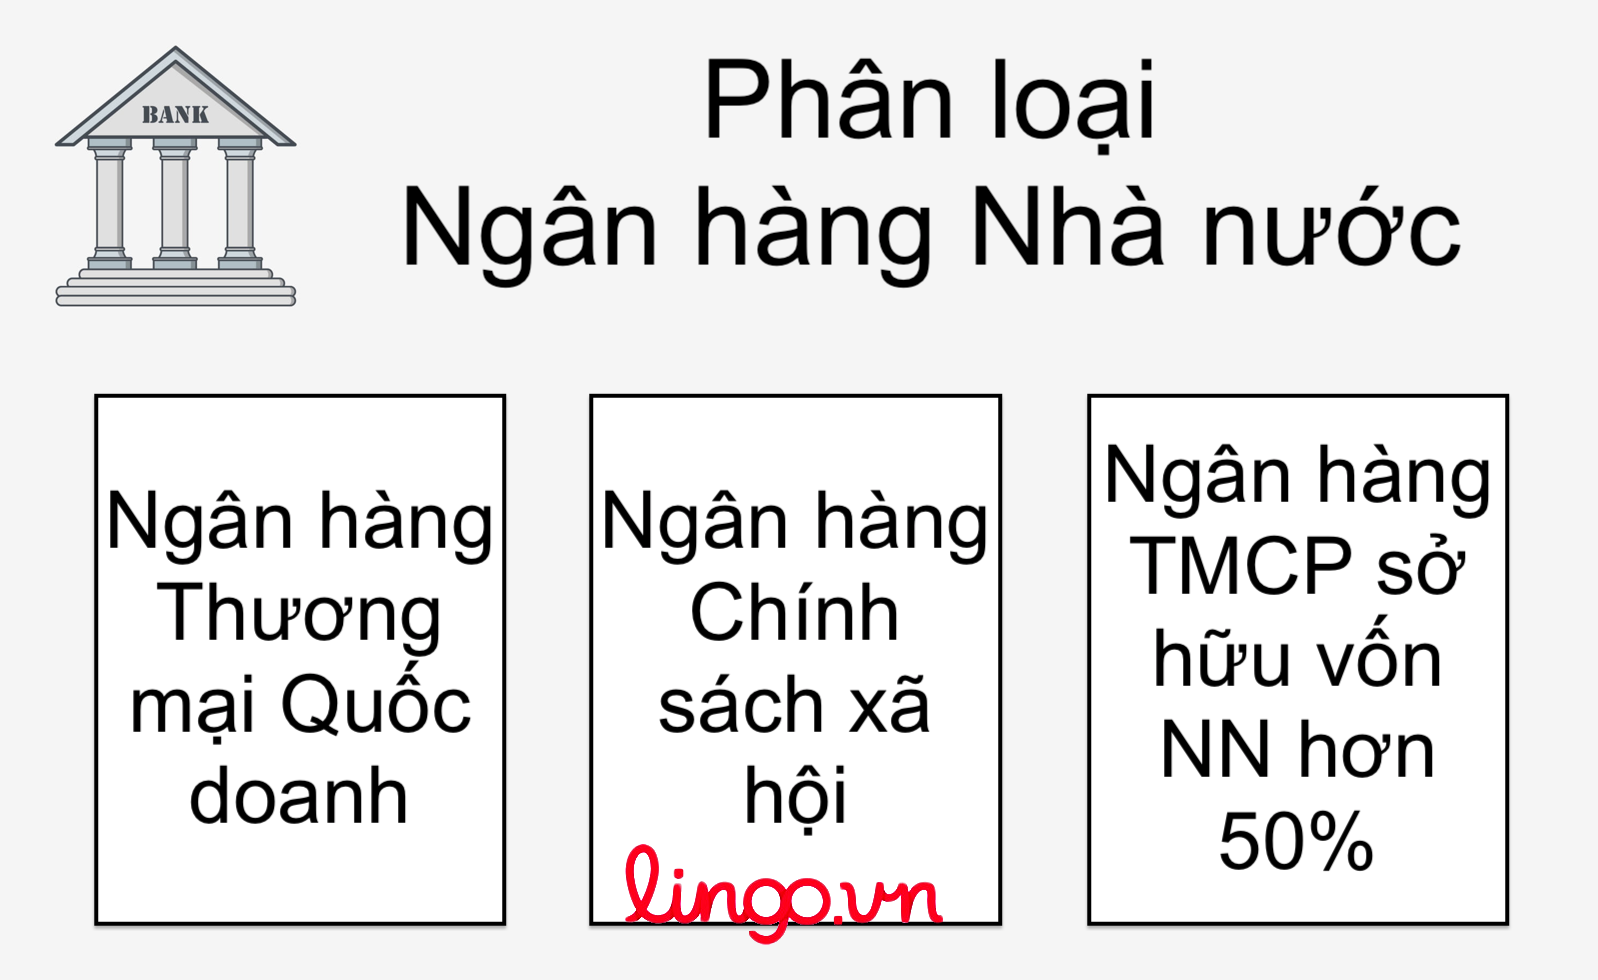 phan-loai-ngan-hang-nha-nuoc